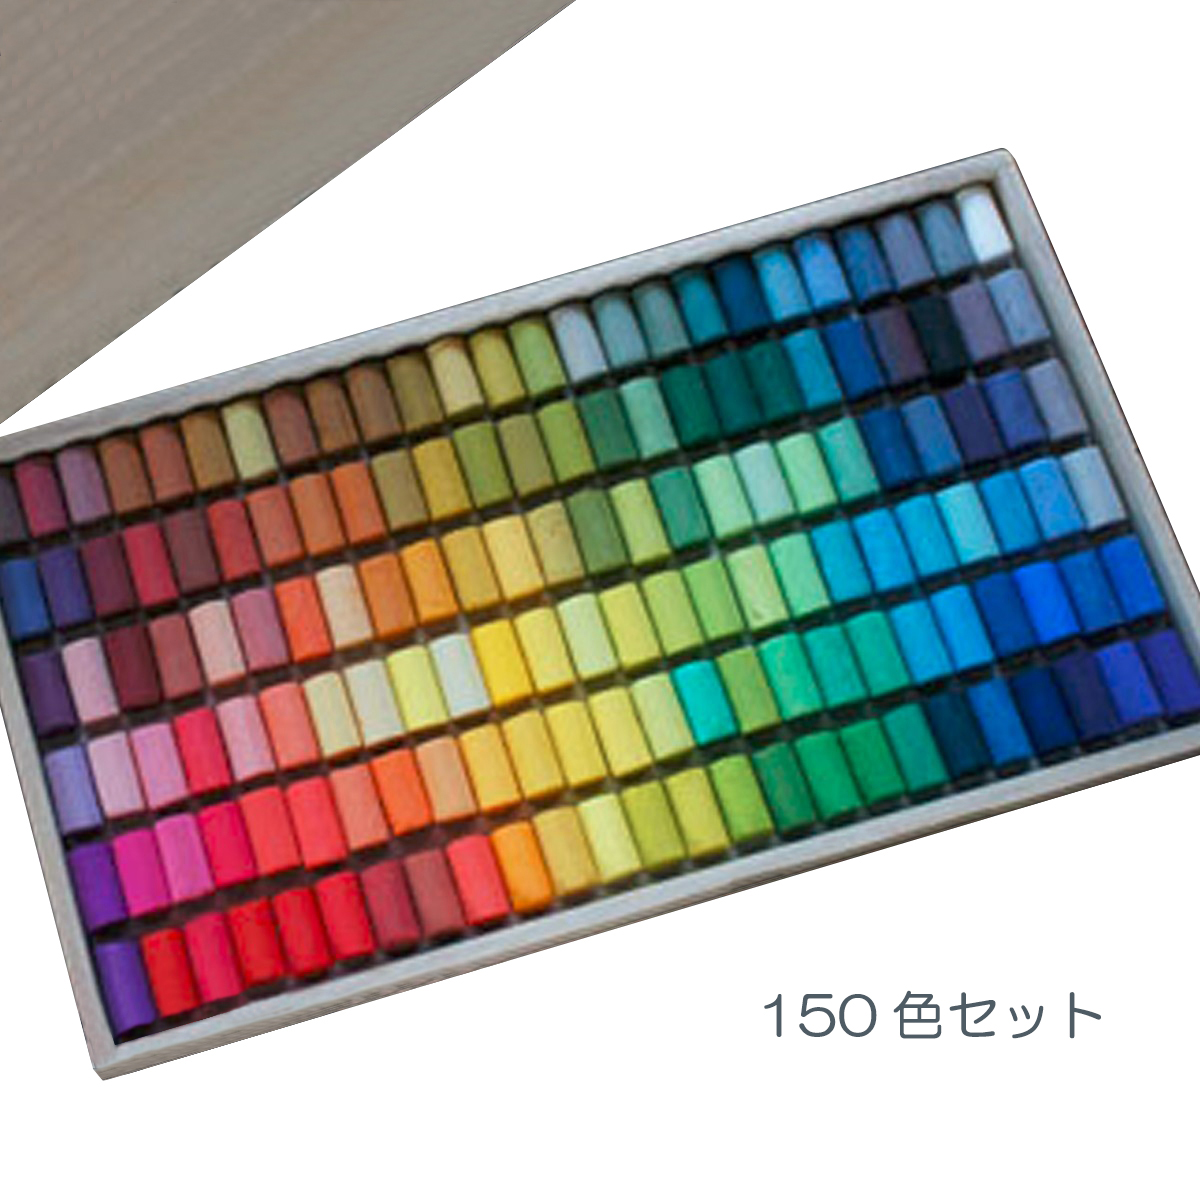 スケッチ 日本製 ソフト 絵画 ゴンドラパステル 150色セット パステル デッサン 木箱入 その他 通販 Rumble Media